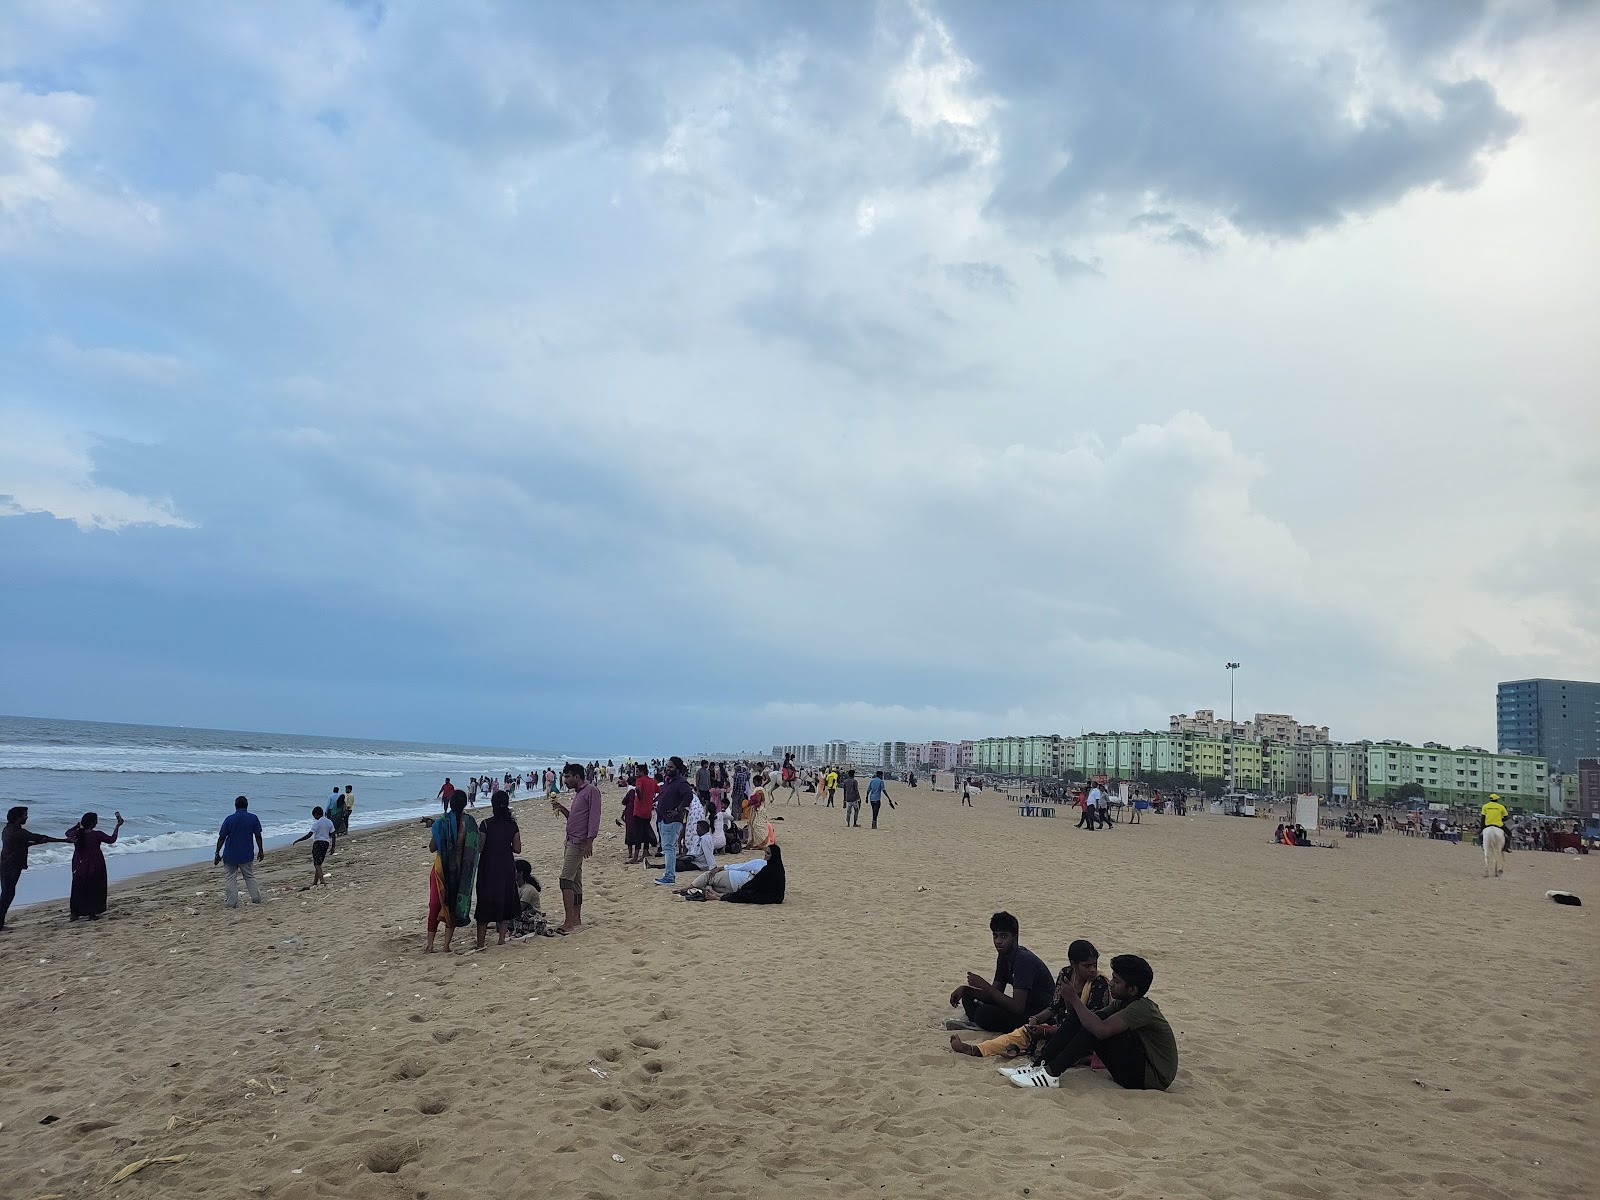 Gandhi Beach'in fotoğrafı parlak kum yüzey ile